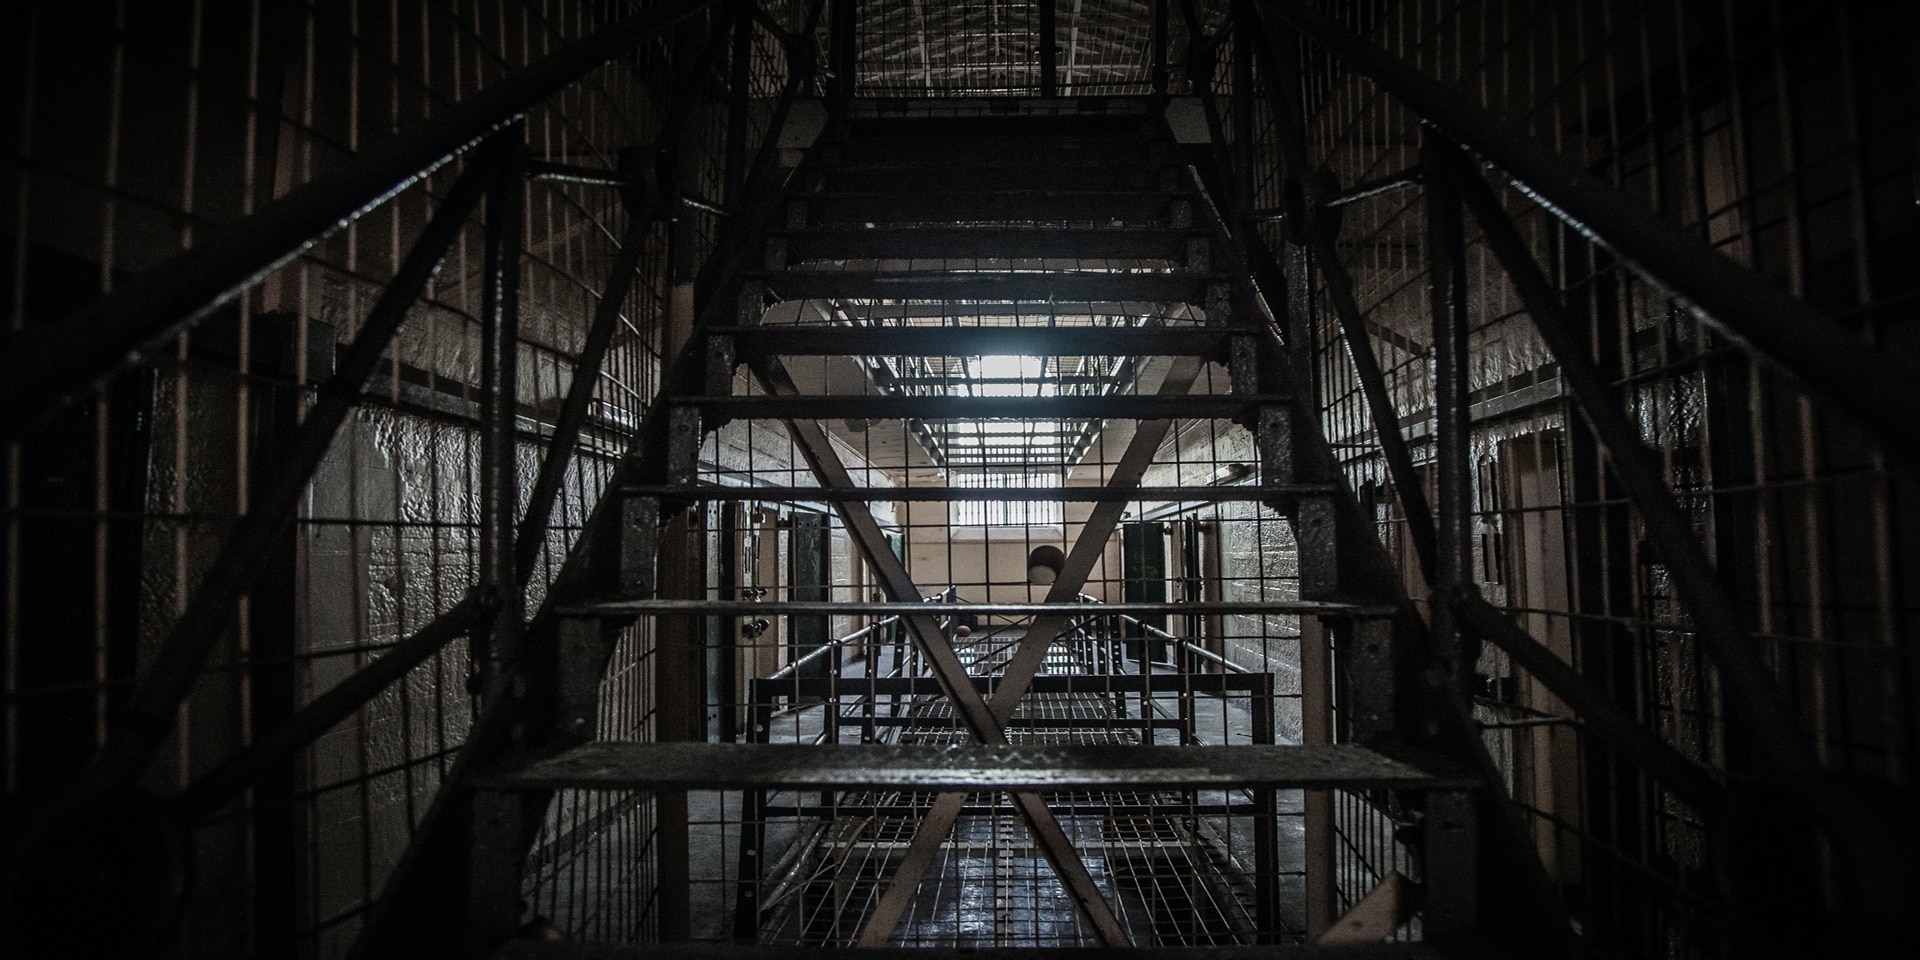 Blick in die Hallen eines Gefängnisses.